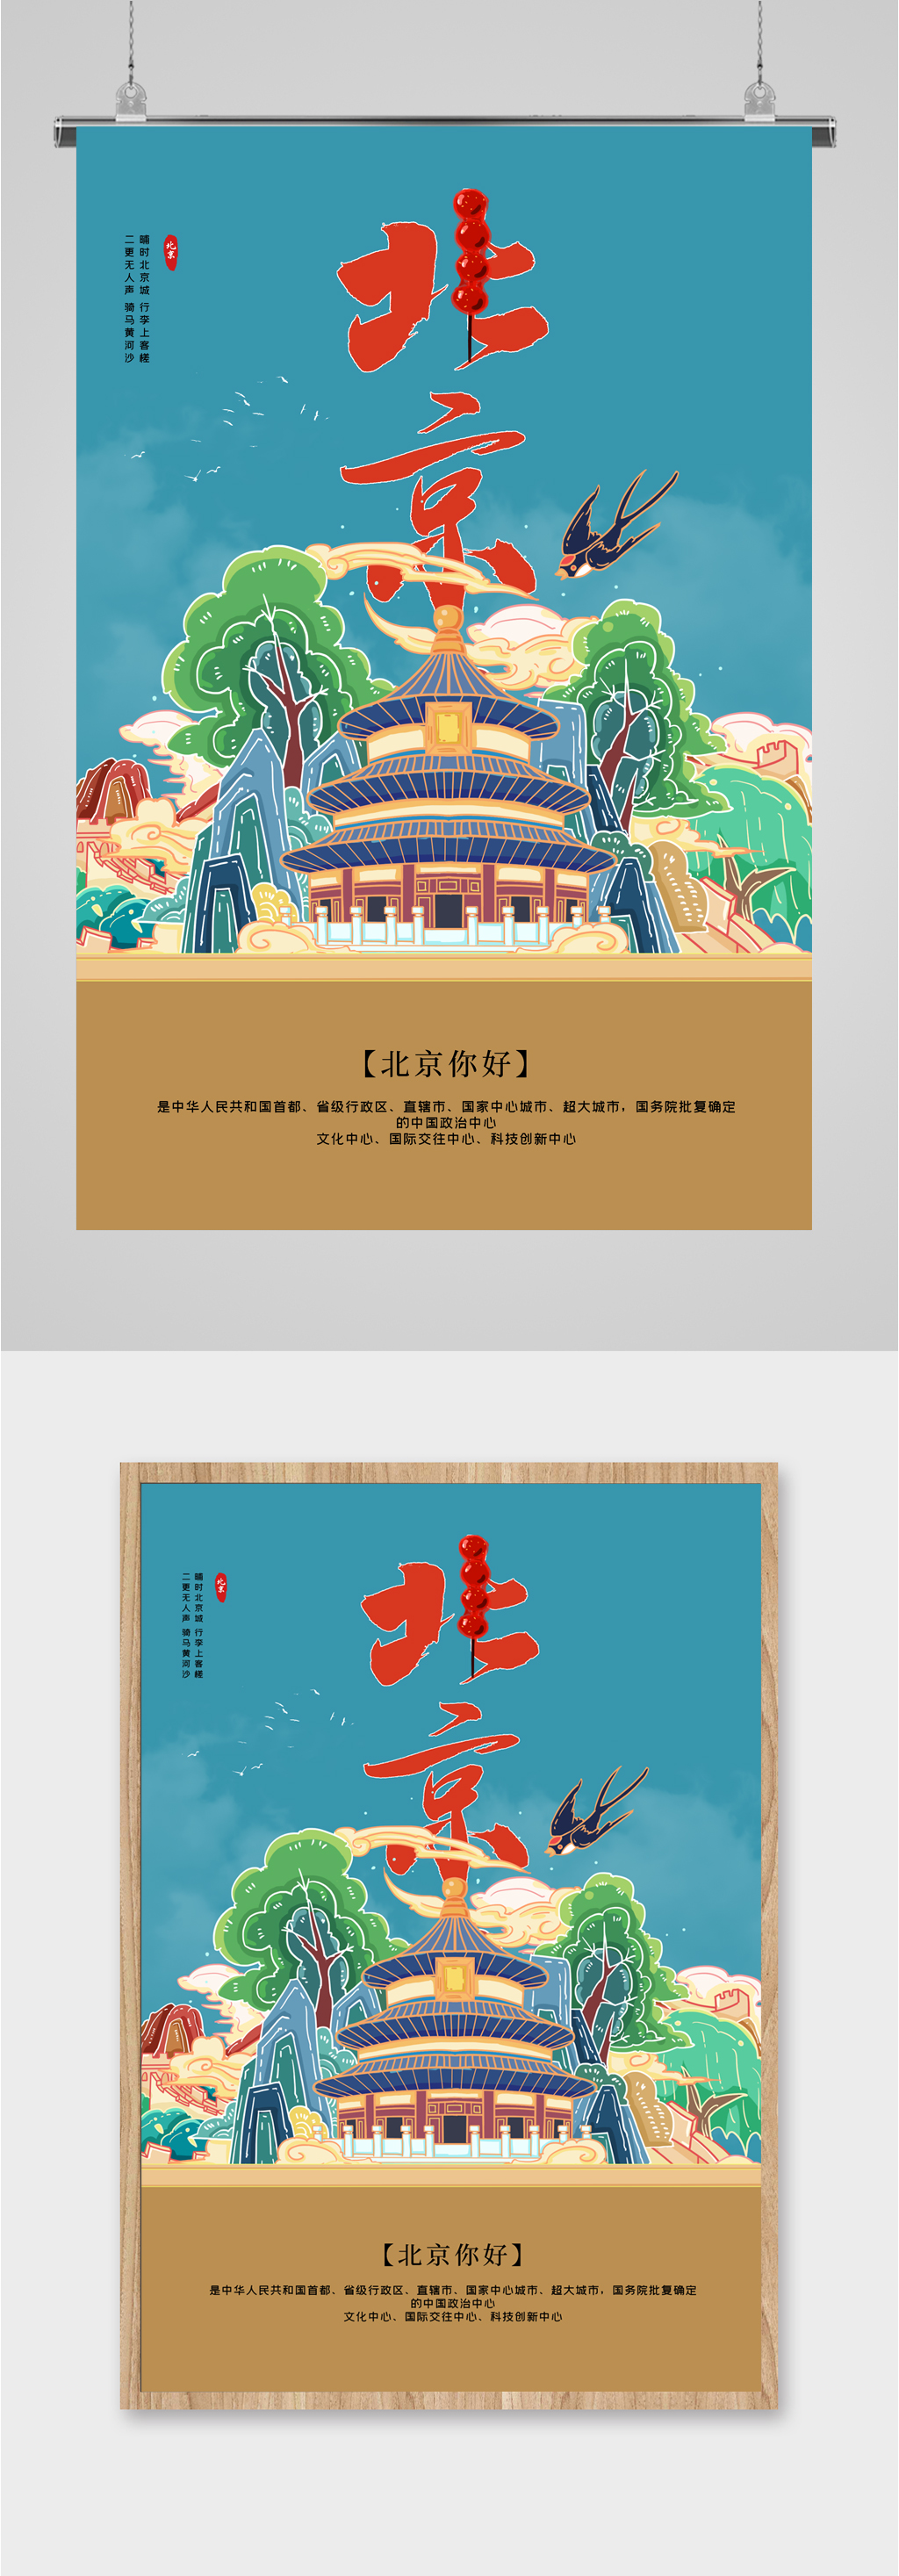 北京旅游插画介绍海报